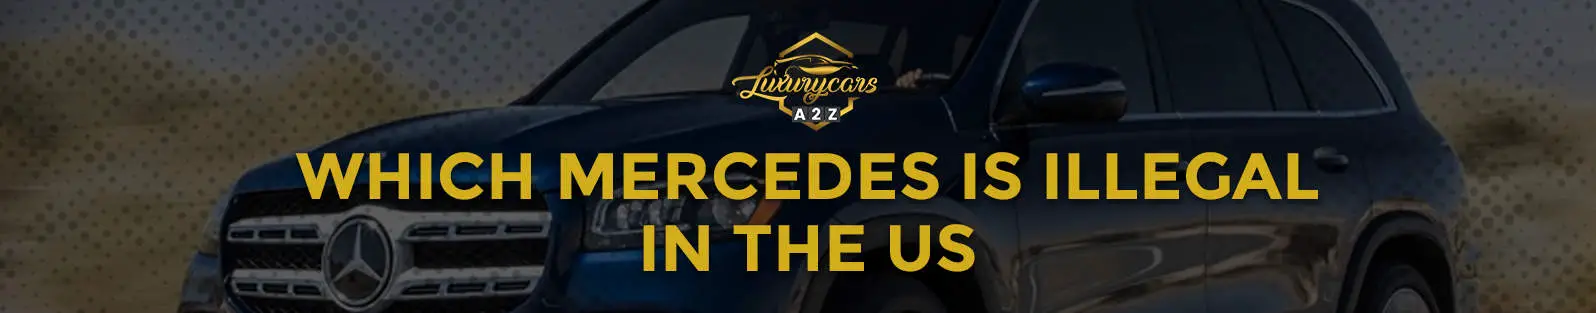 Quelle Mercedes est illégale aux États-Unis ?